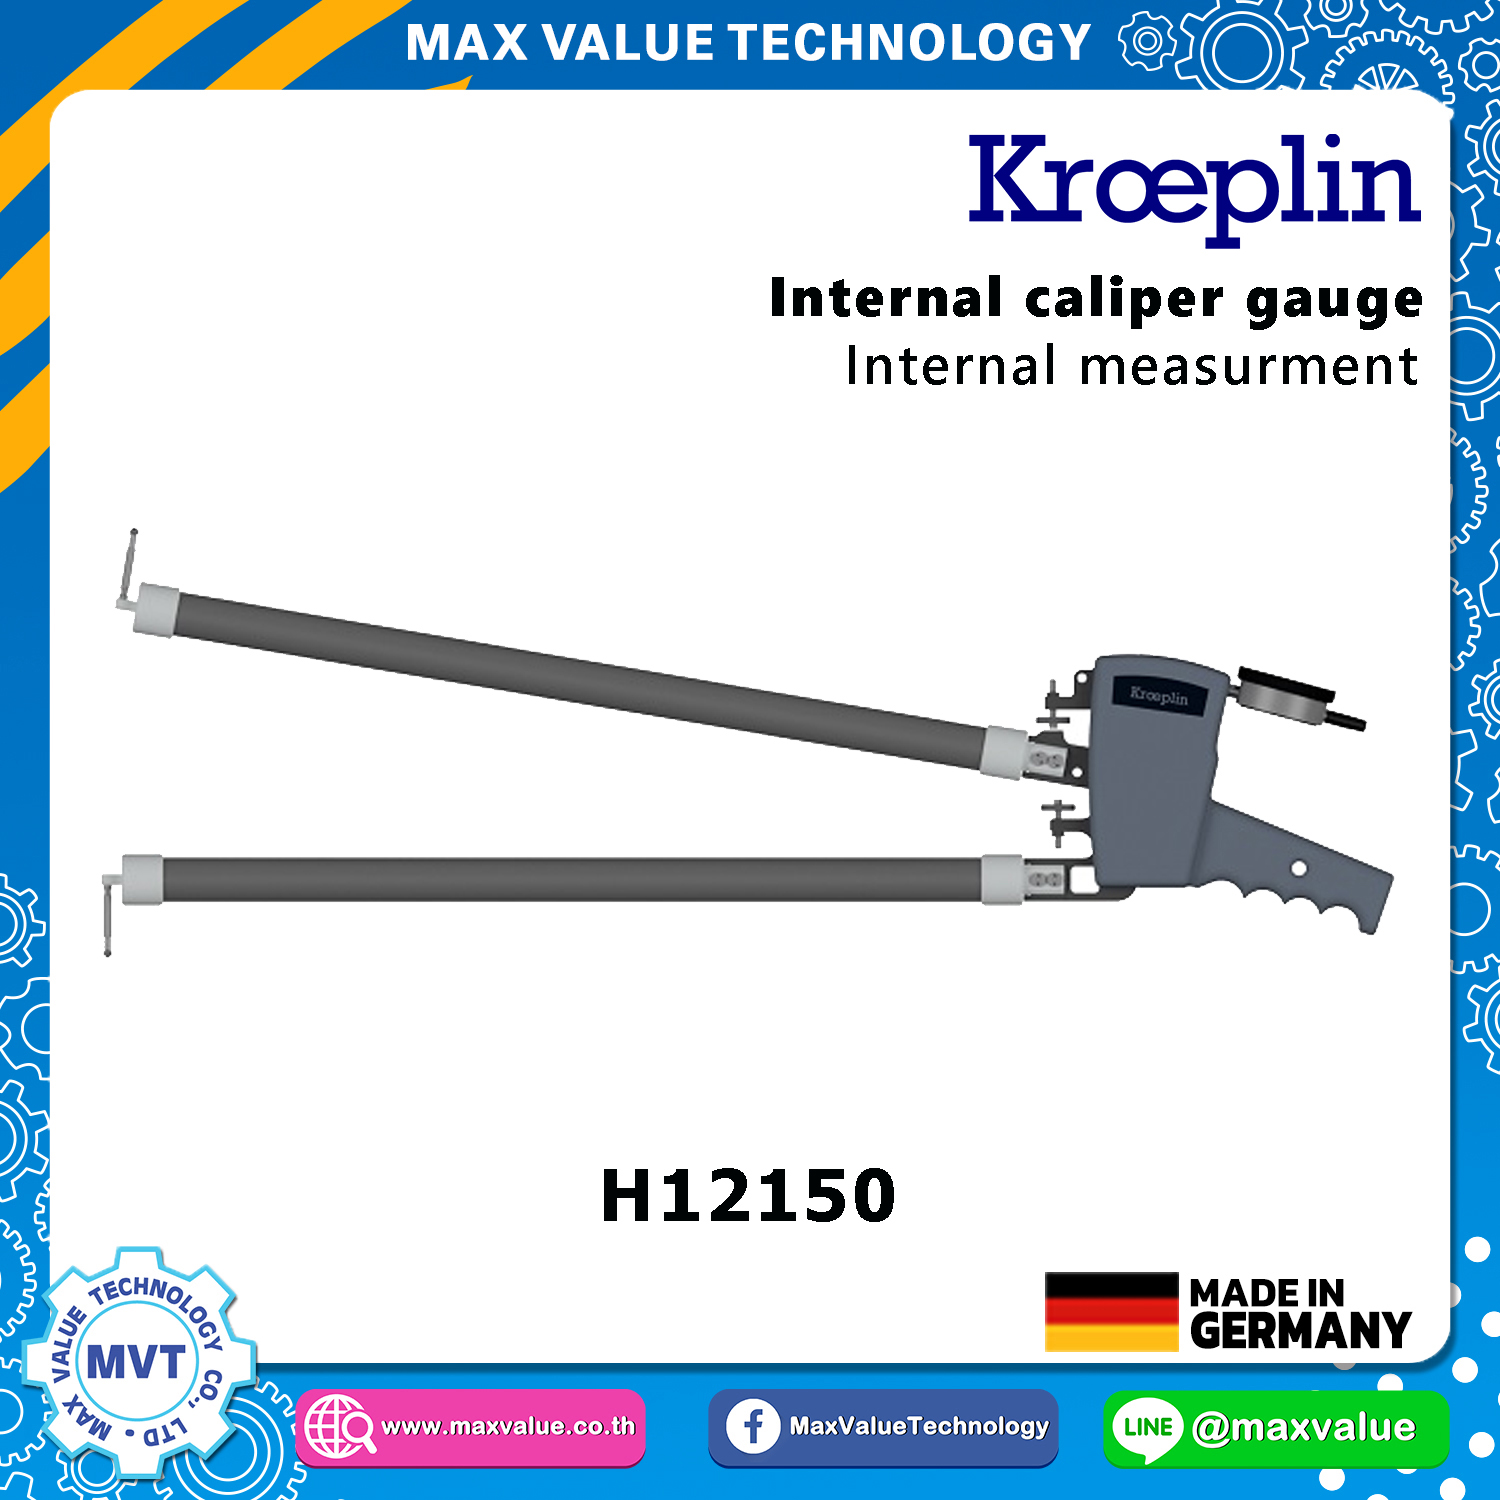 H12150 - Internal Caliper Gauge (Mechanical) 150-250 mm